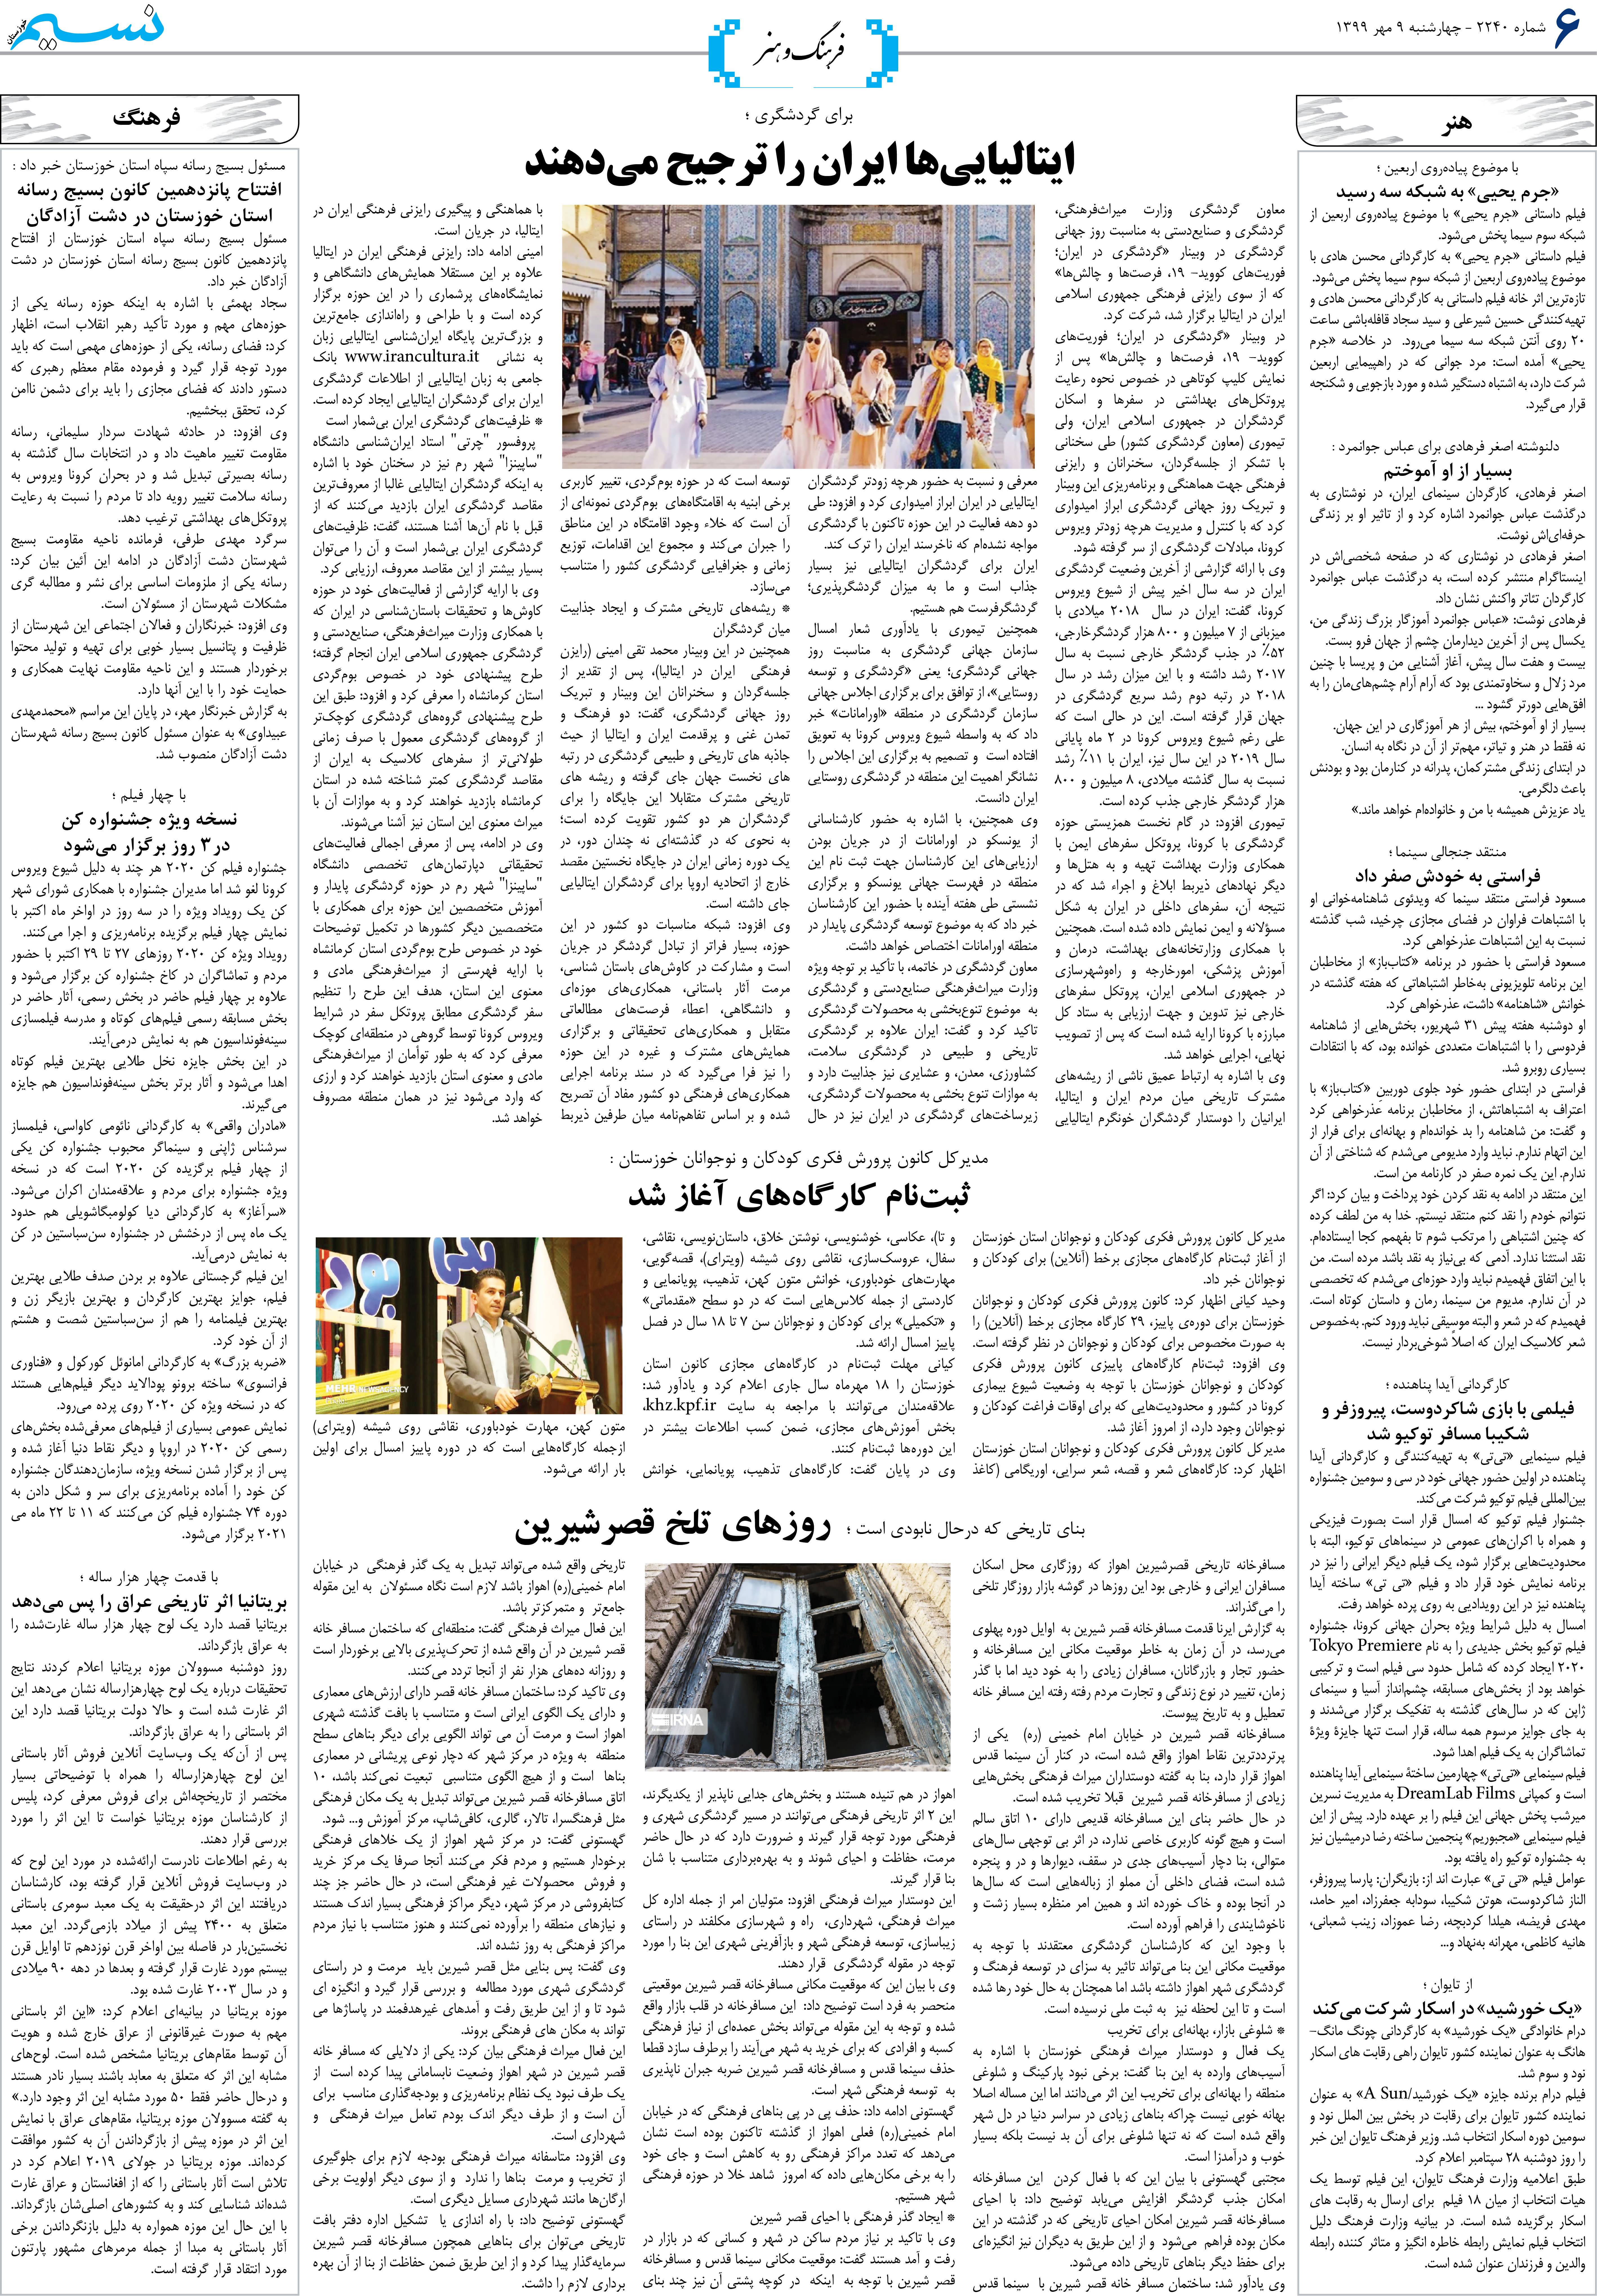 صفحه فرهنگ و هنر روزنامه نسیم شماره 2240